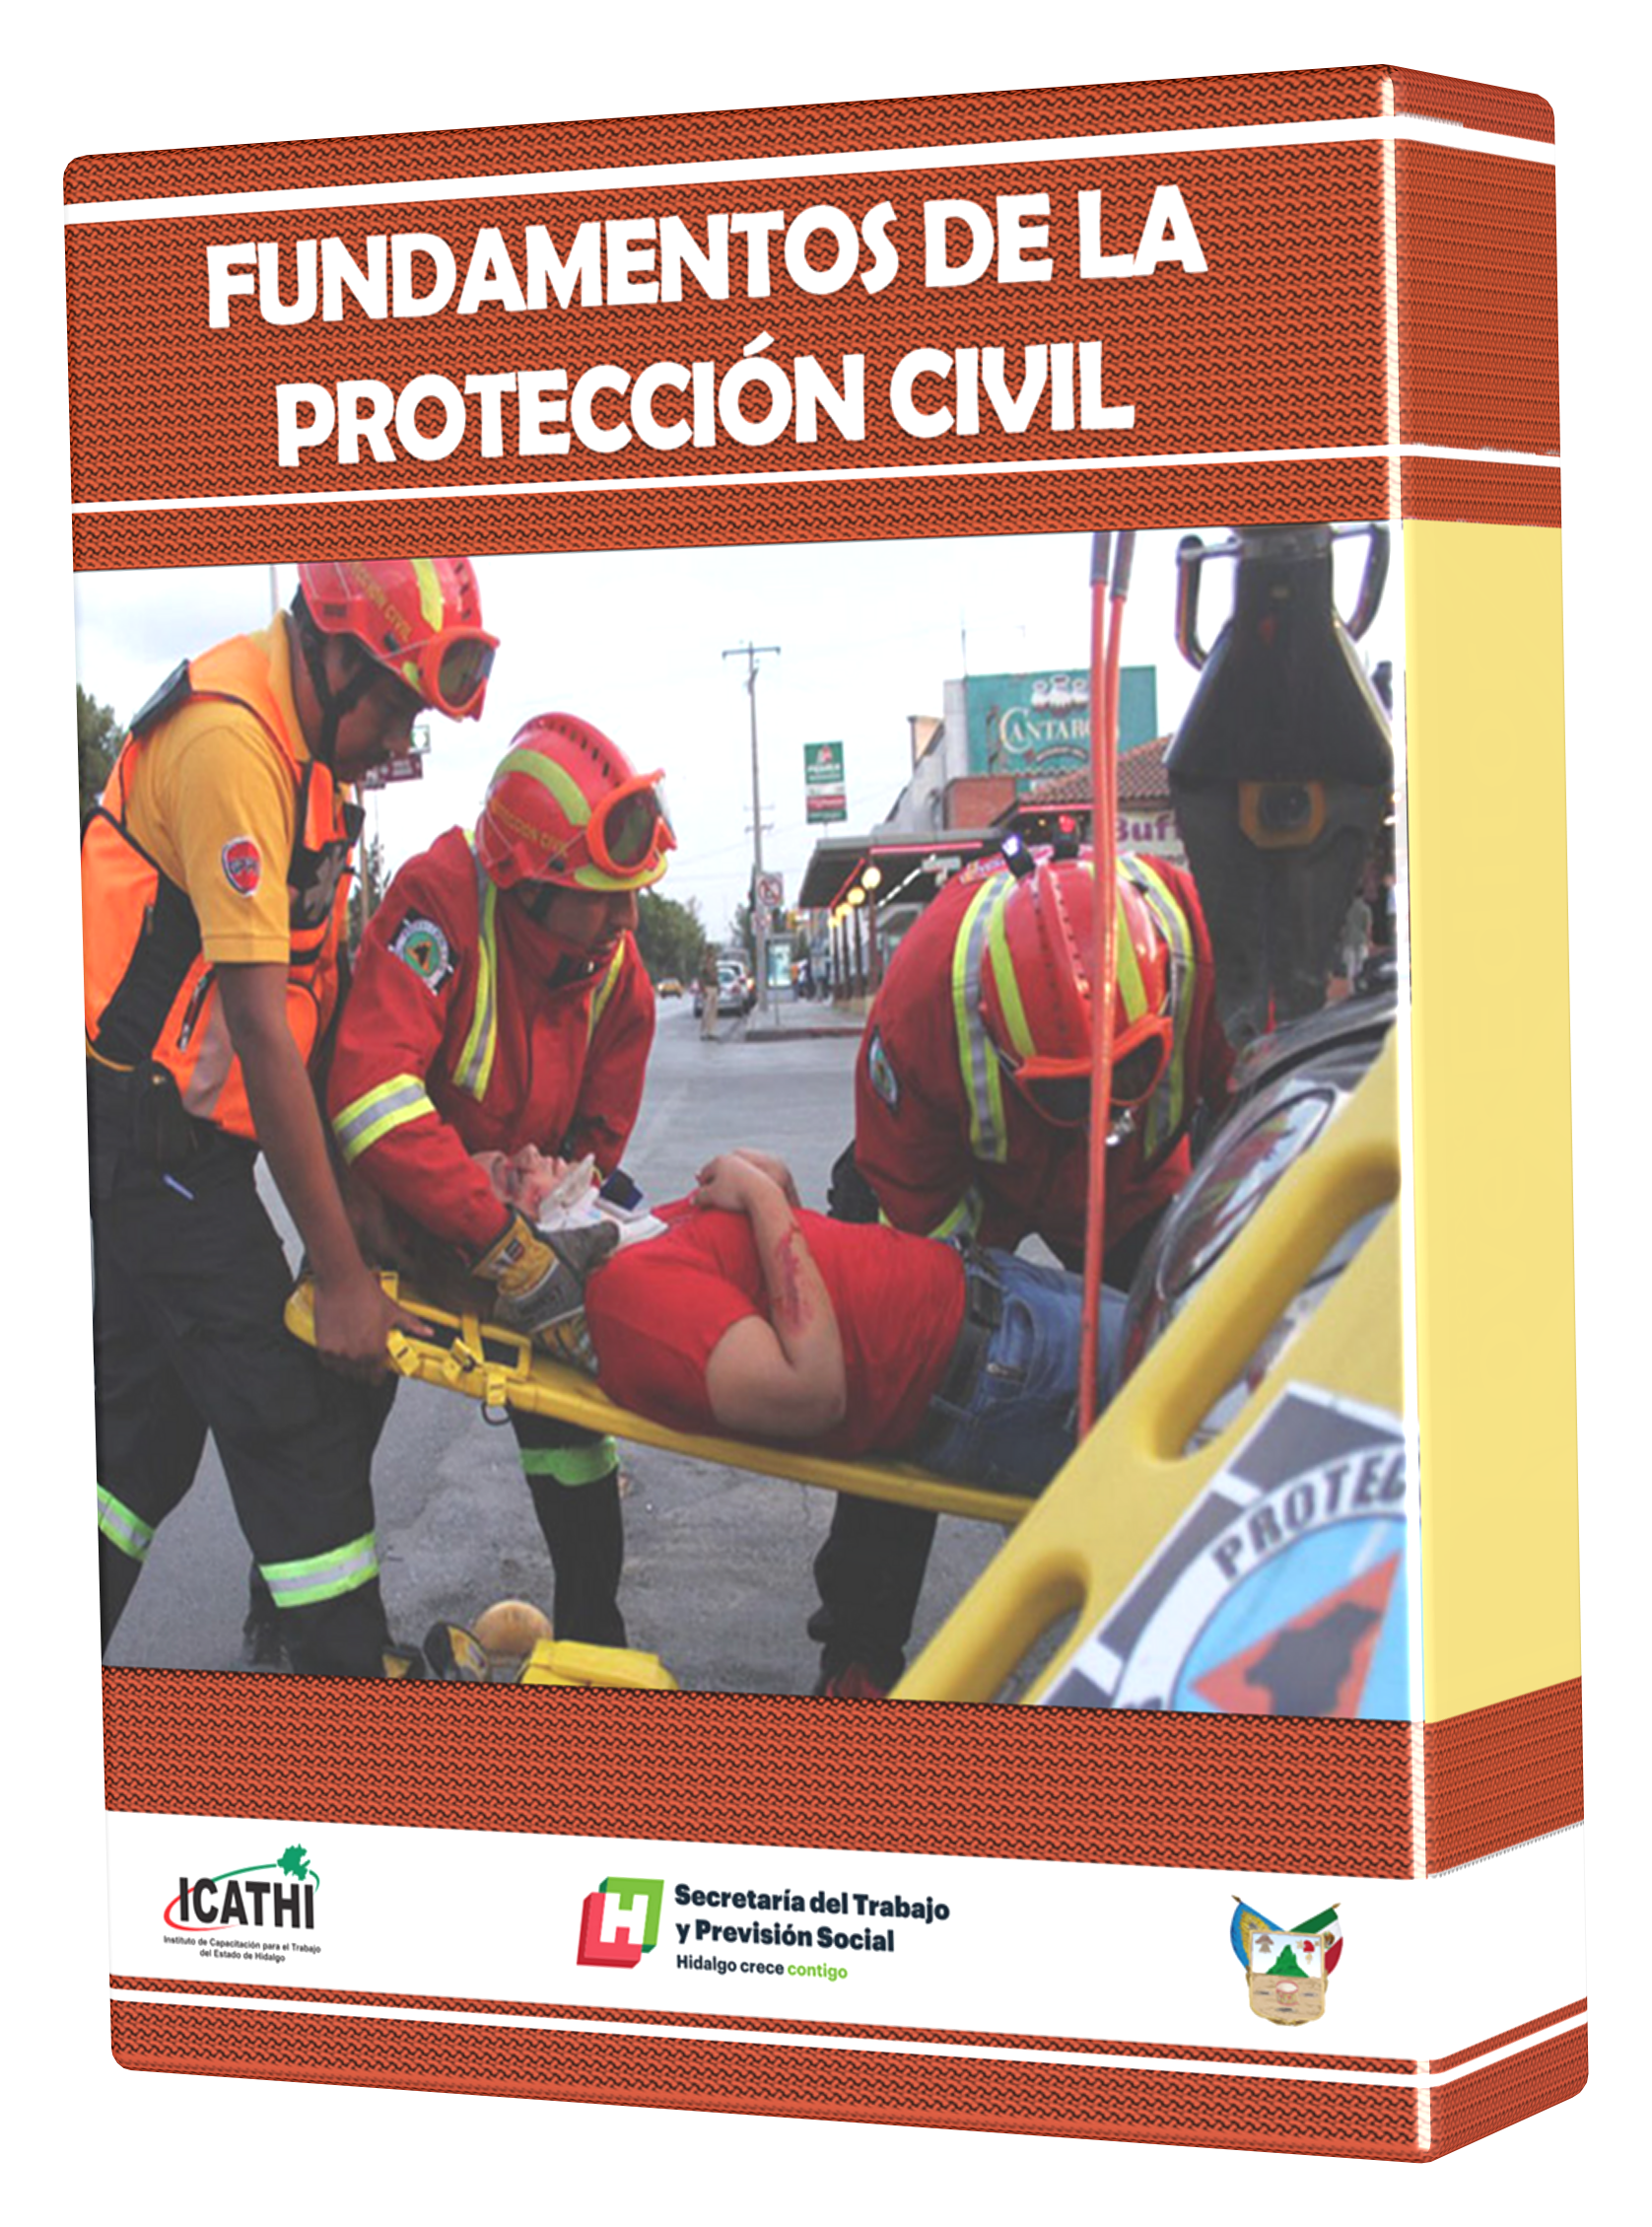 Imagen curso de protección civil